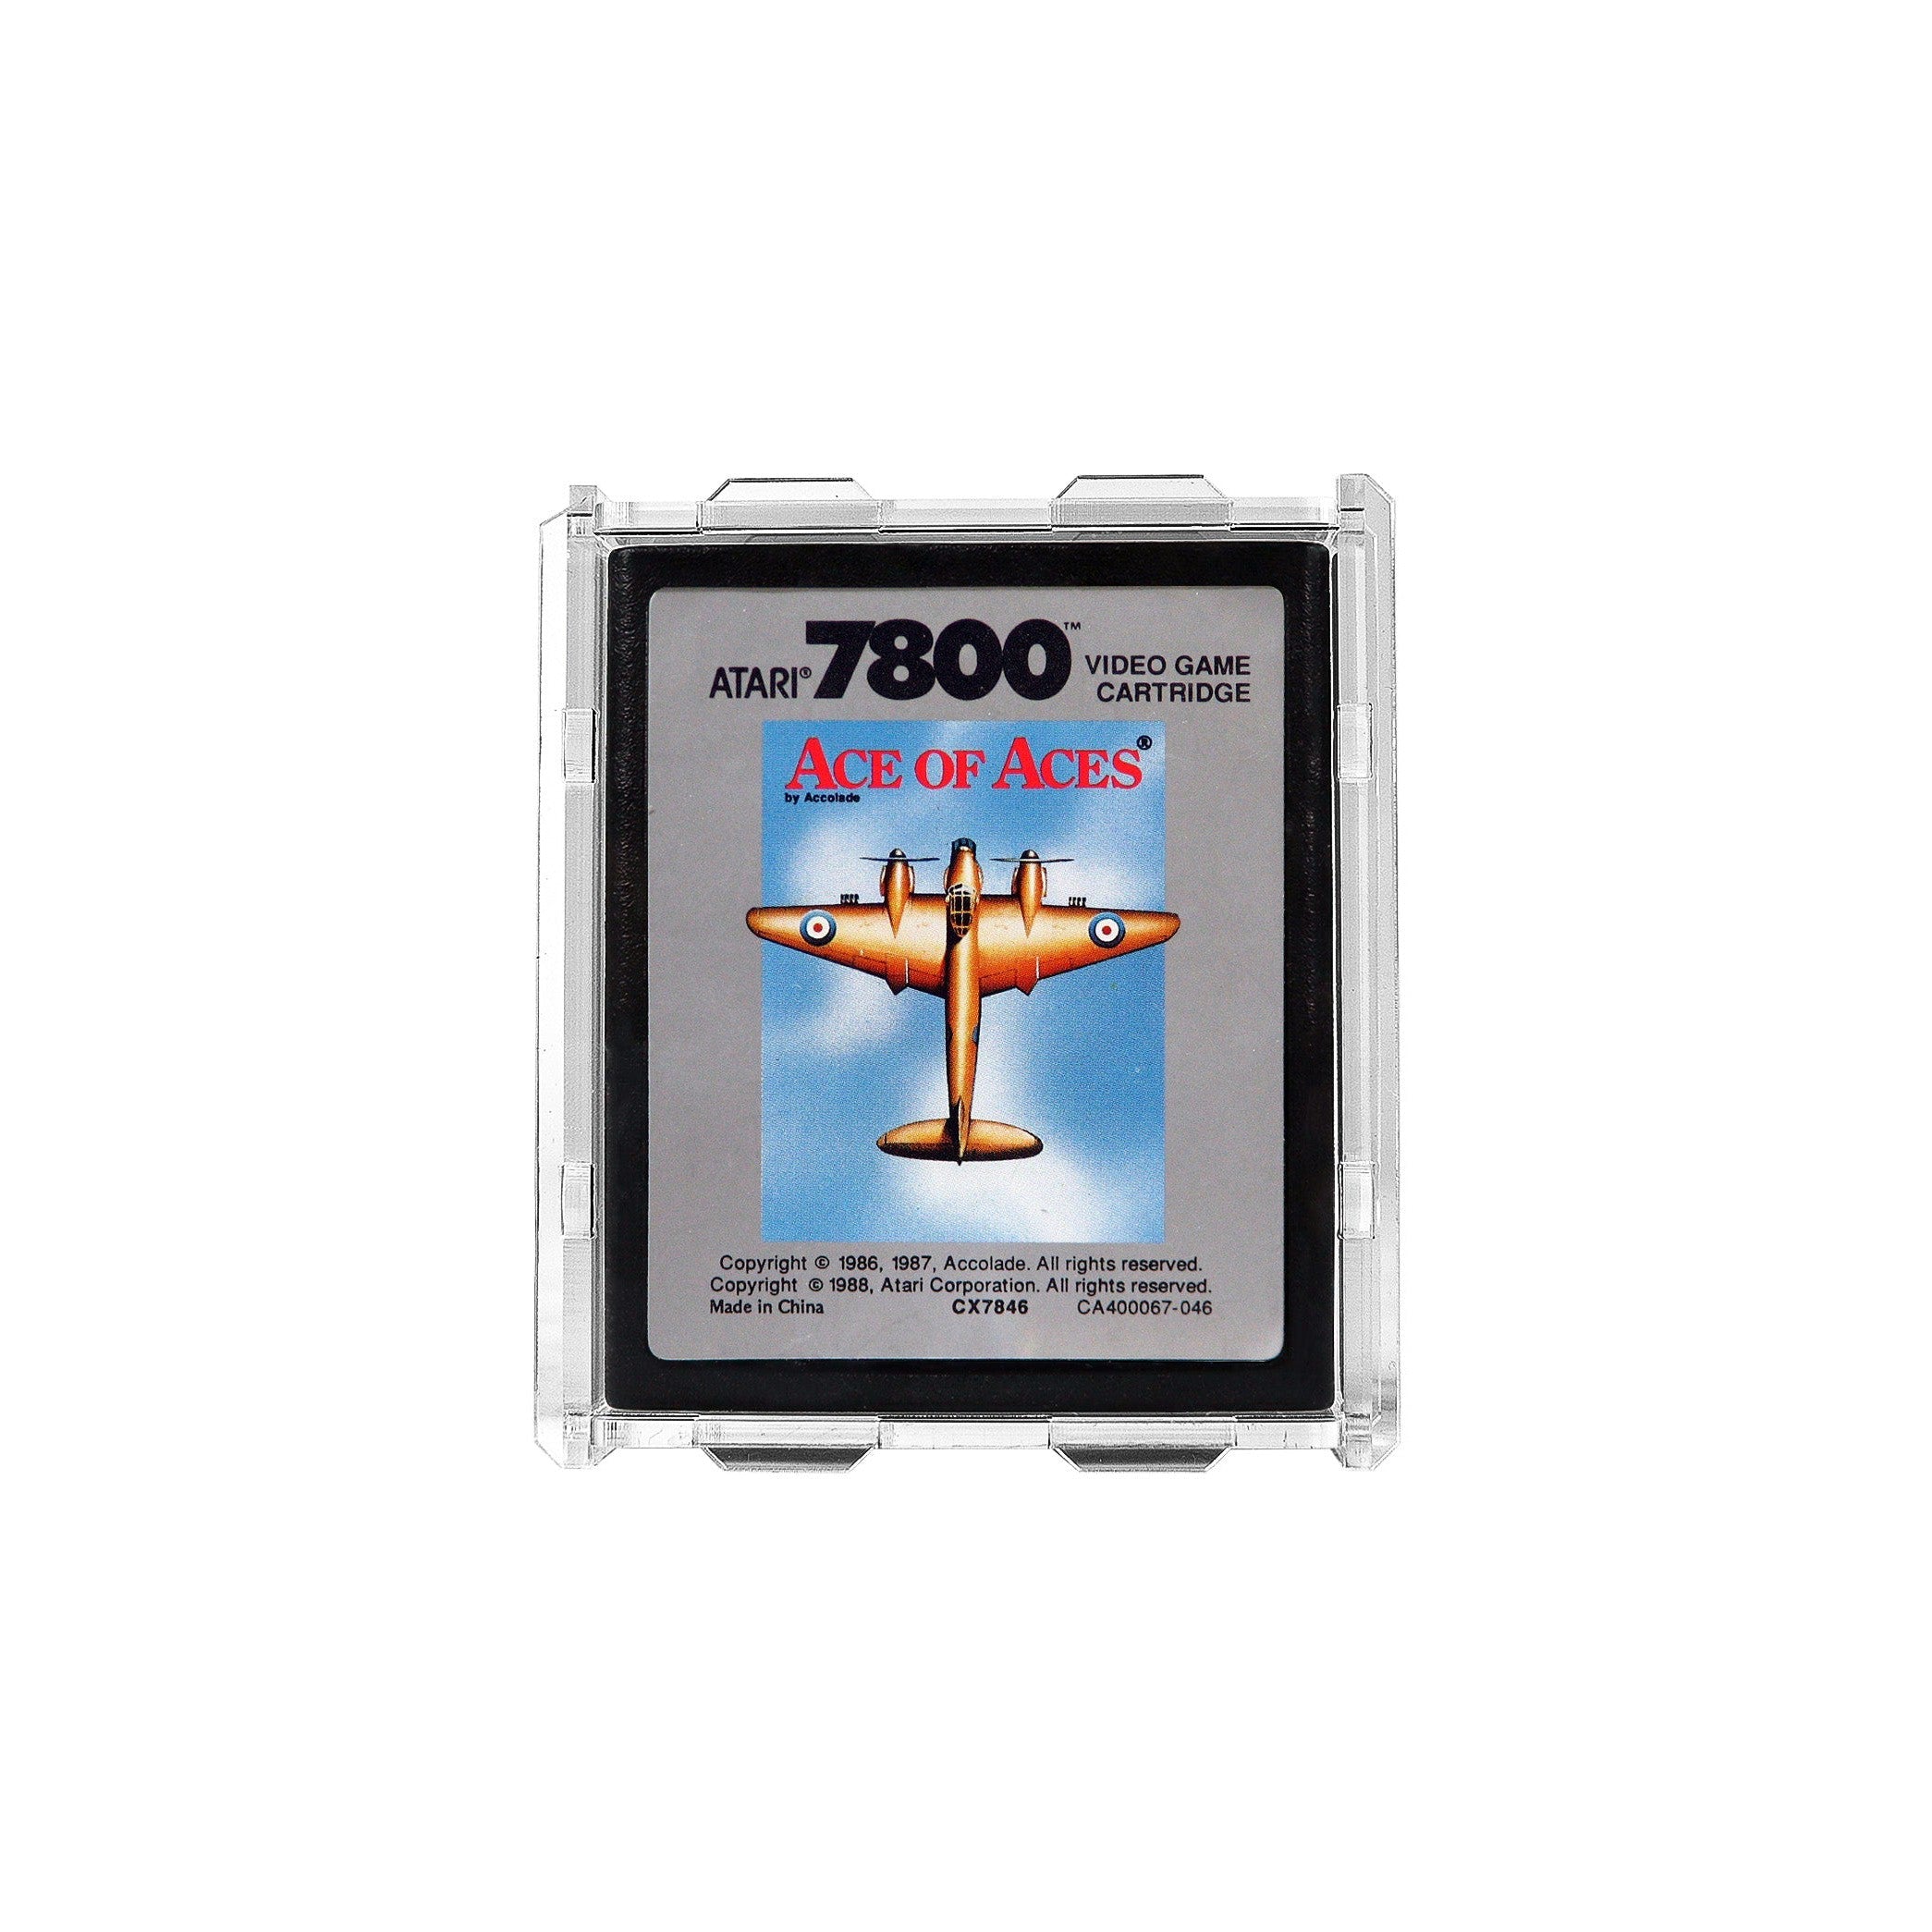 Protector para Atari 7800 (Cartucho)-acrilico-exhibidor-caja-case-Decolecto